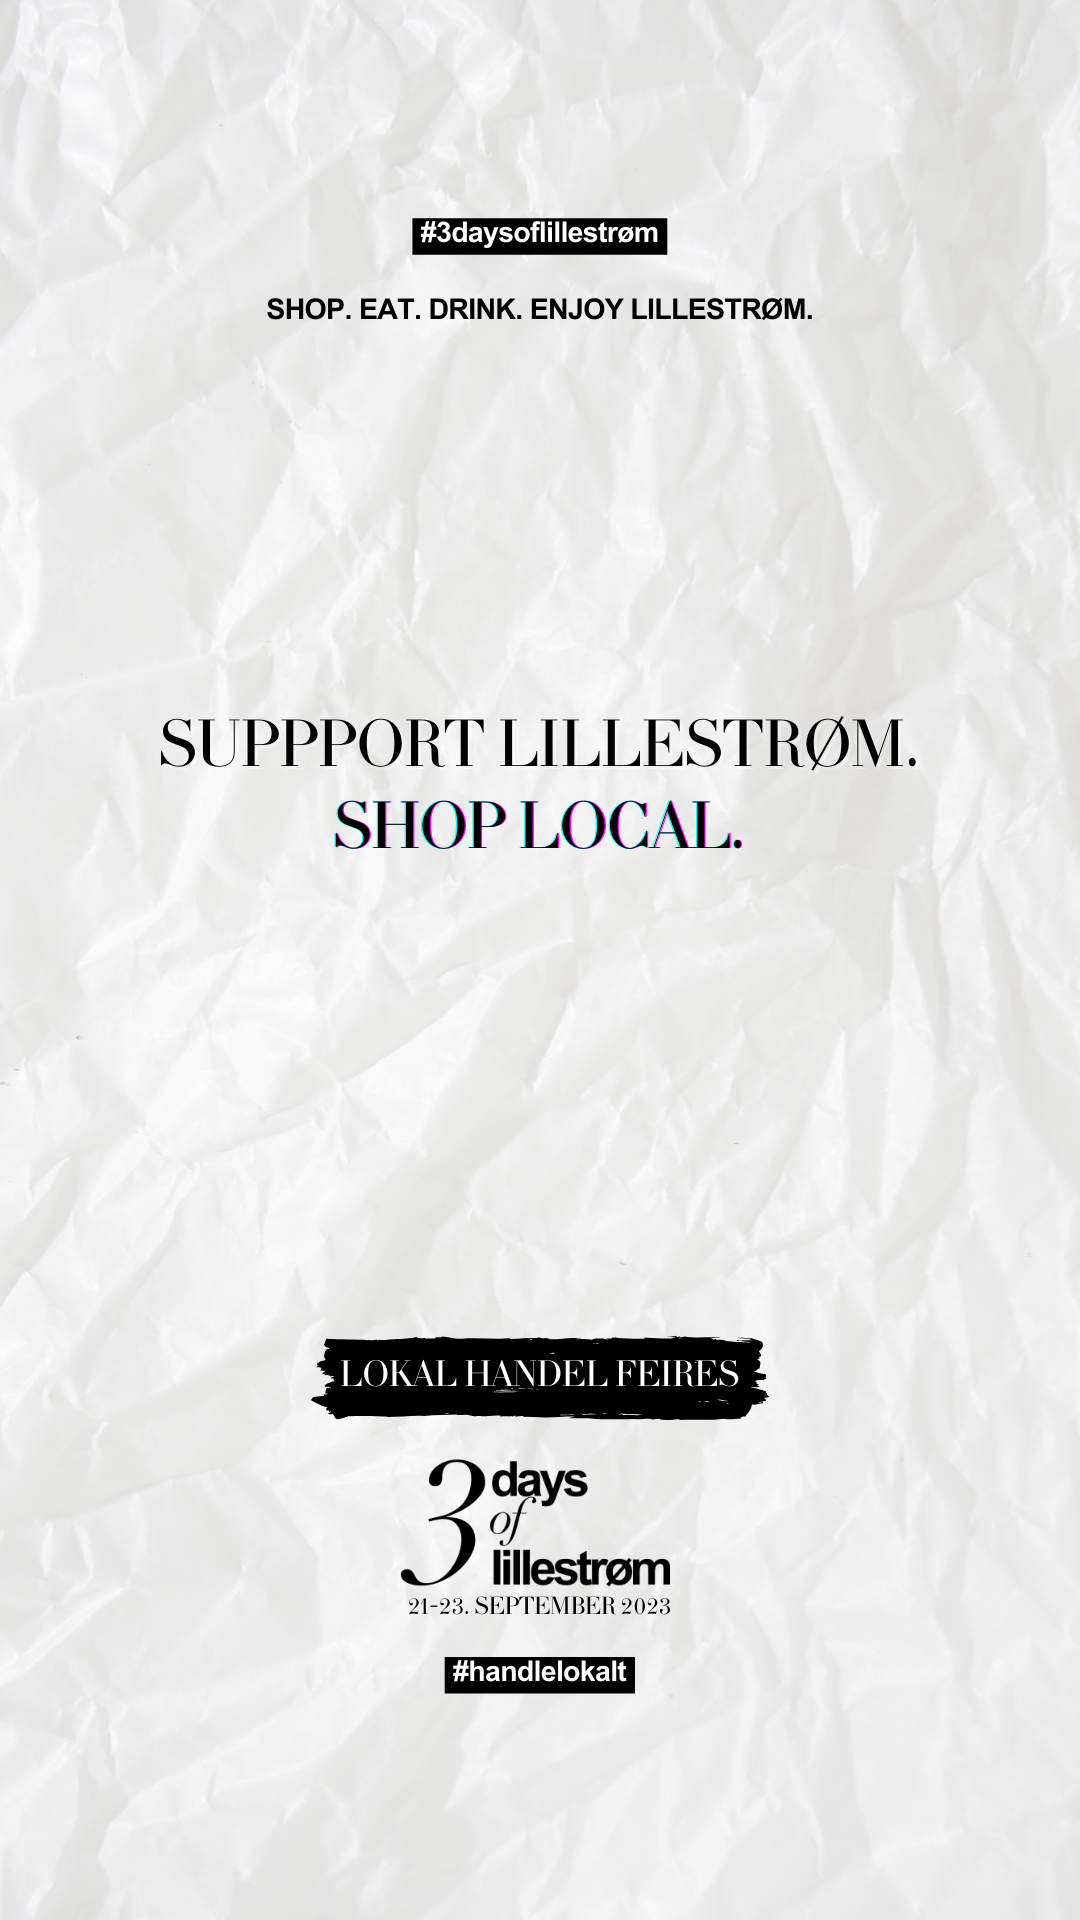 3 days of Lillestrøm "Support Lillestrøm Shop local" 21.-23. september